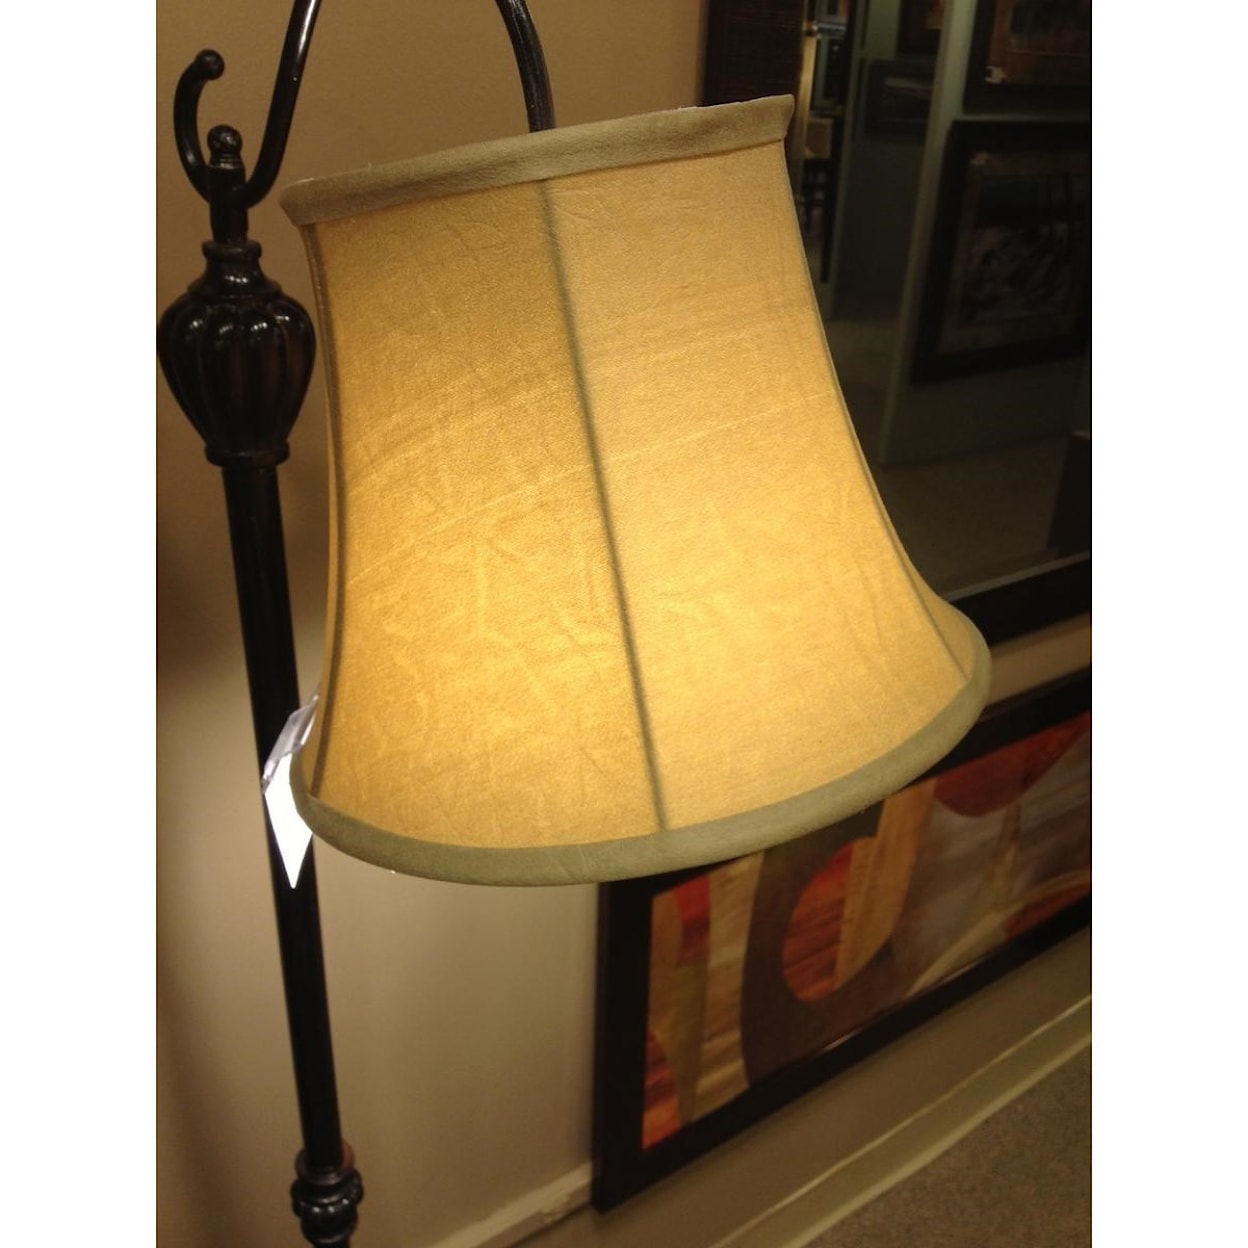 Crestview Collection Lighting Briggs Downbridge Floor Lamp